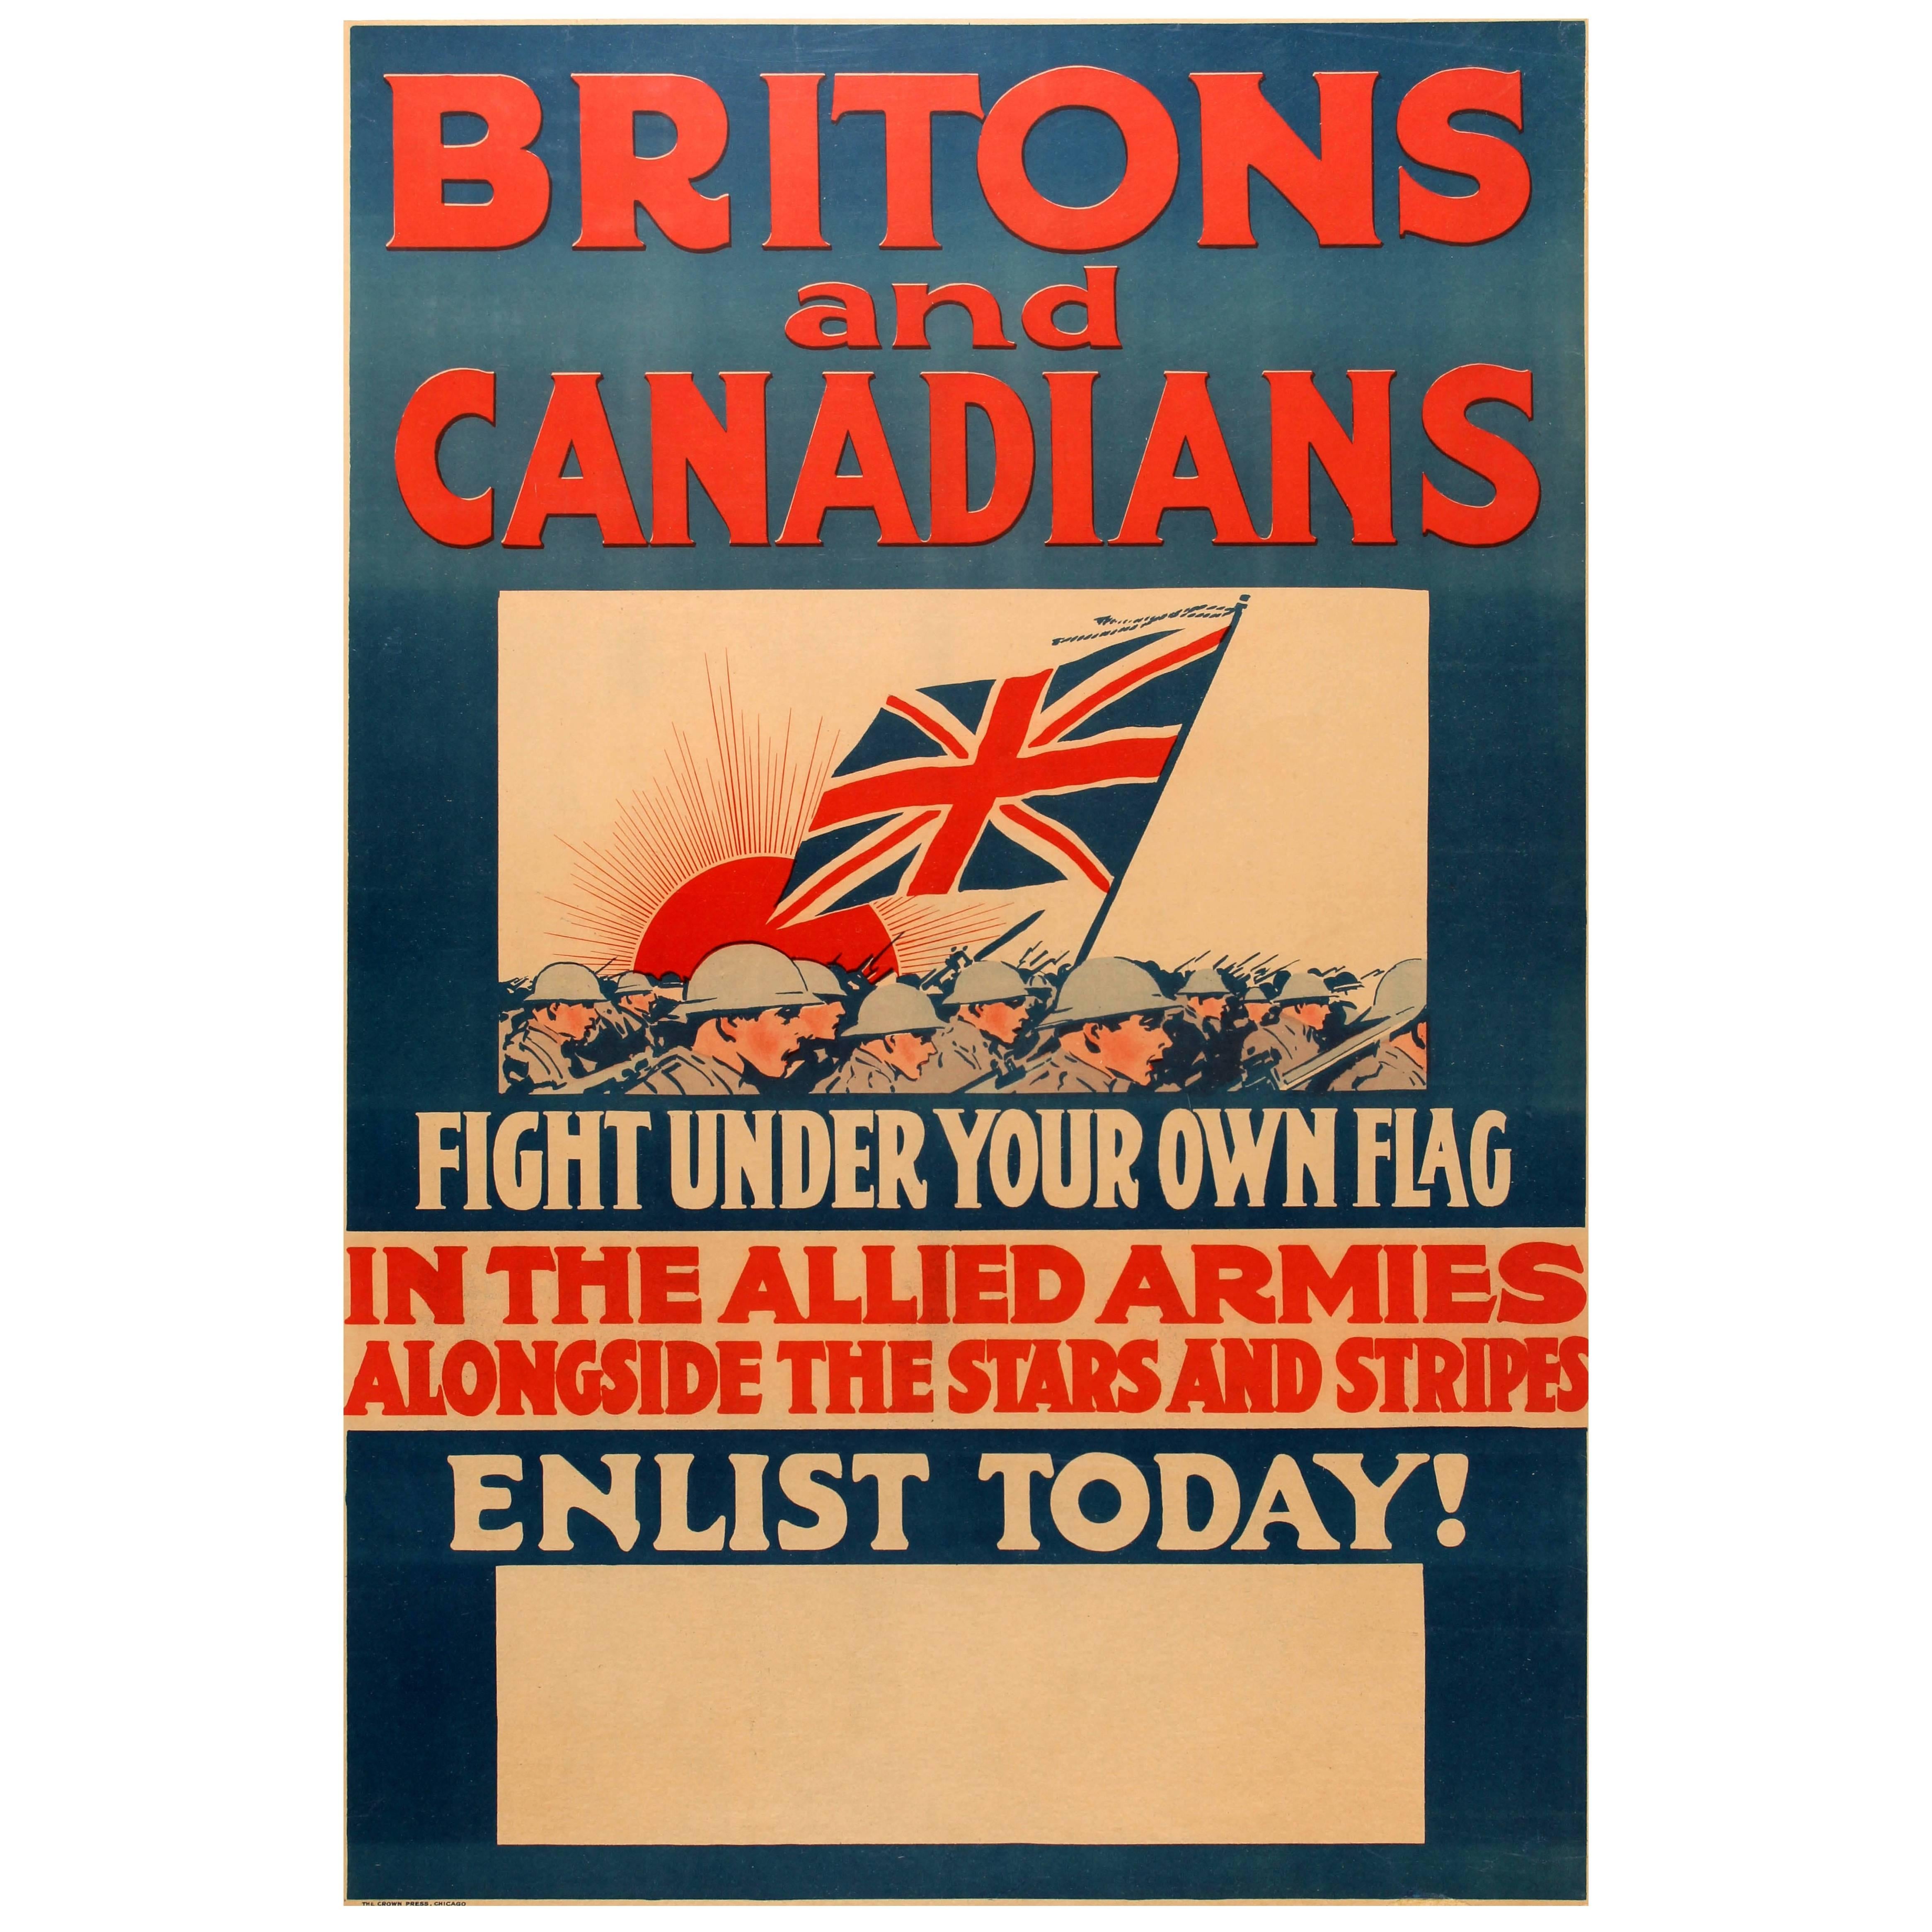 Originalplakat aus dem Ersten Weltkrieg – Briten und Canadians Fight In The Allied Armies